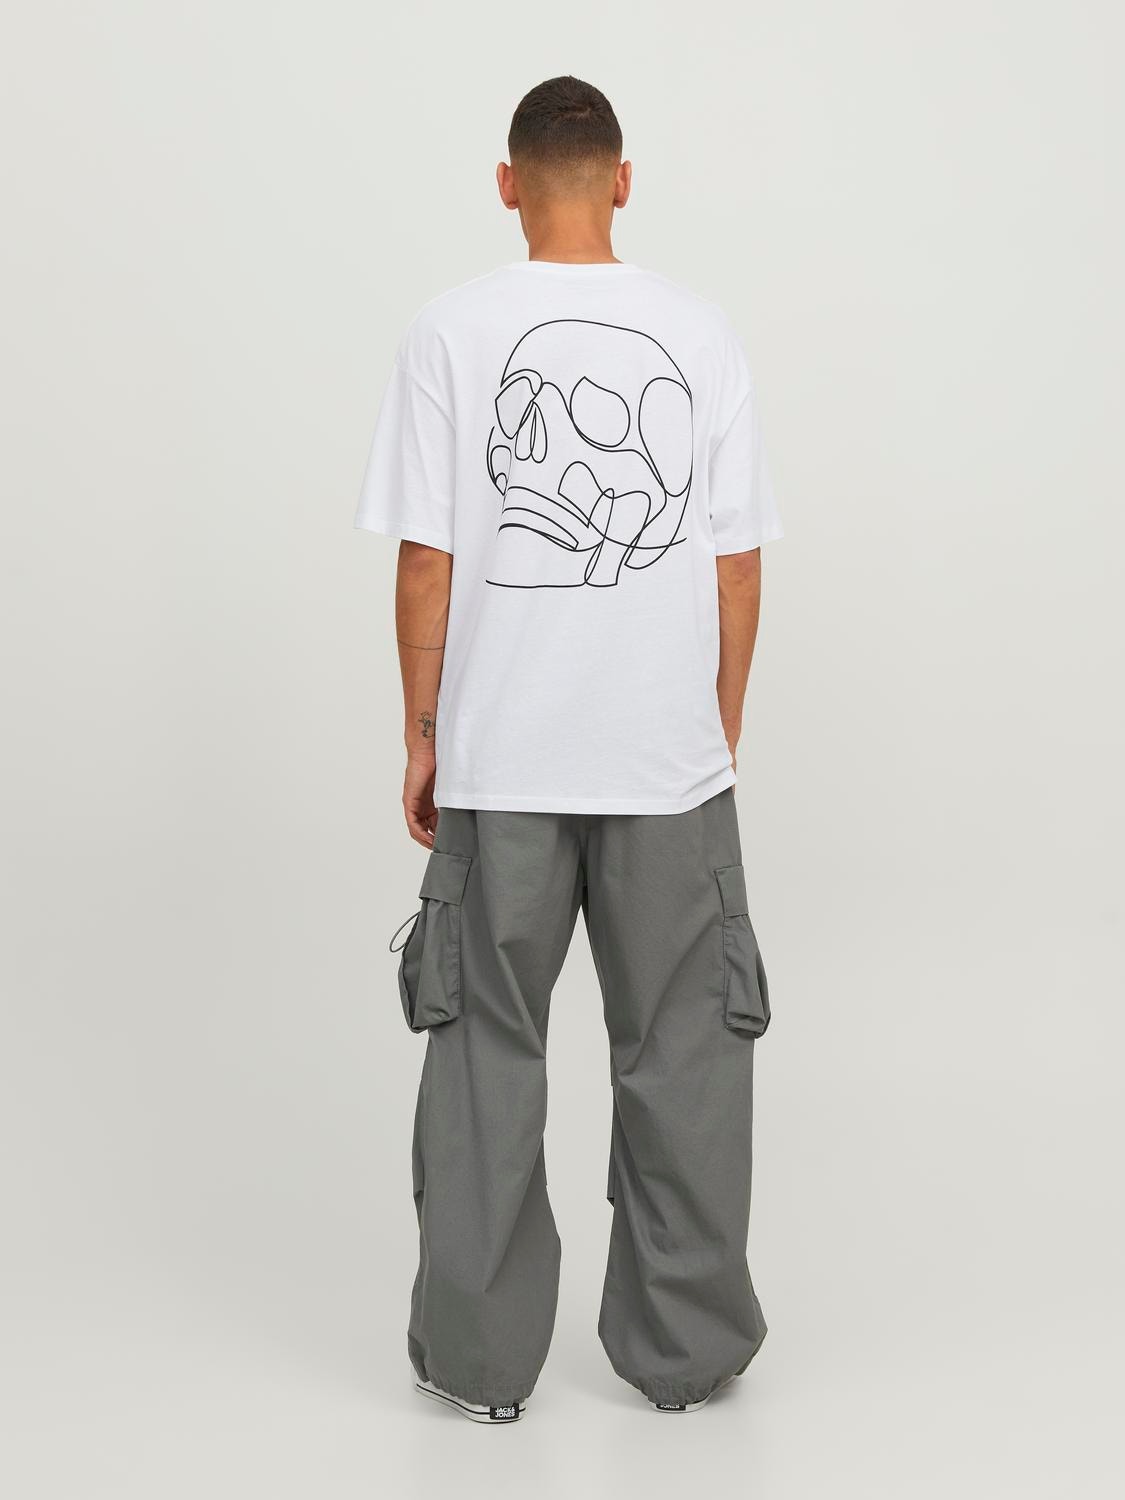 Jack & Jones Gedruckt Rundhals T-shirt -White - 12248496